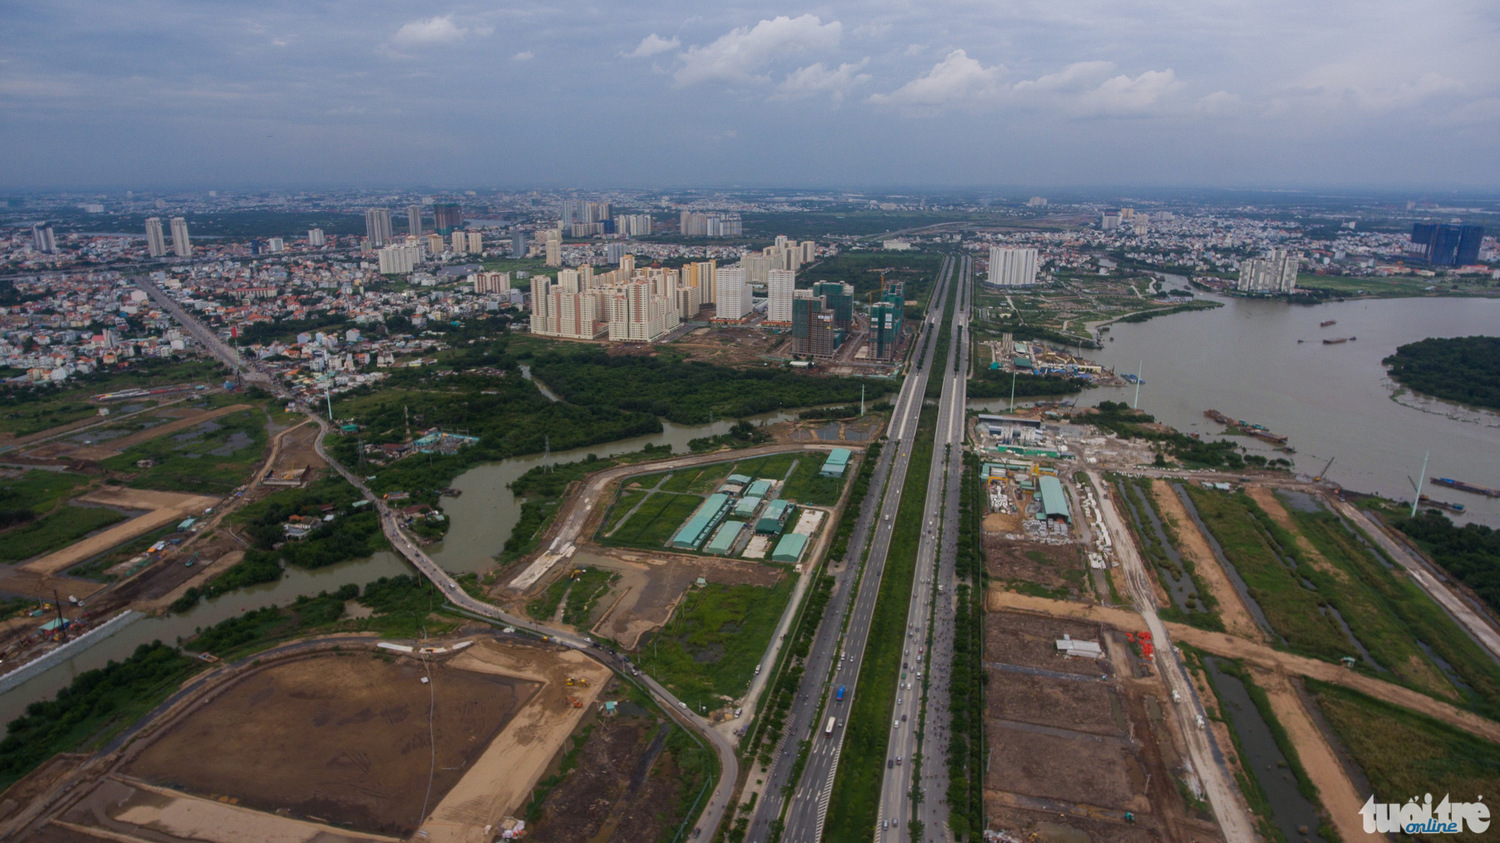 Phía đông bắc khu đô thị Thủ Thiêm giáp với tỉnh lộ 25B các trục đường nội khu đô thị đang hình thành - Thuận Thắng